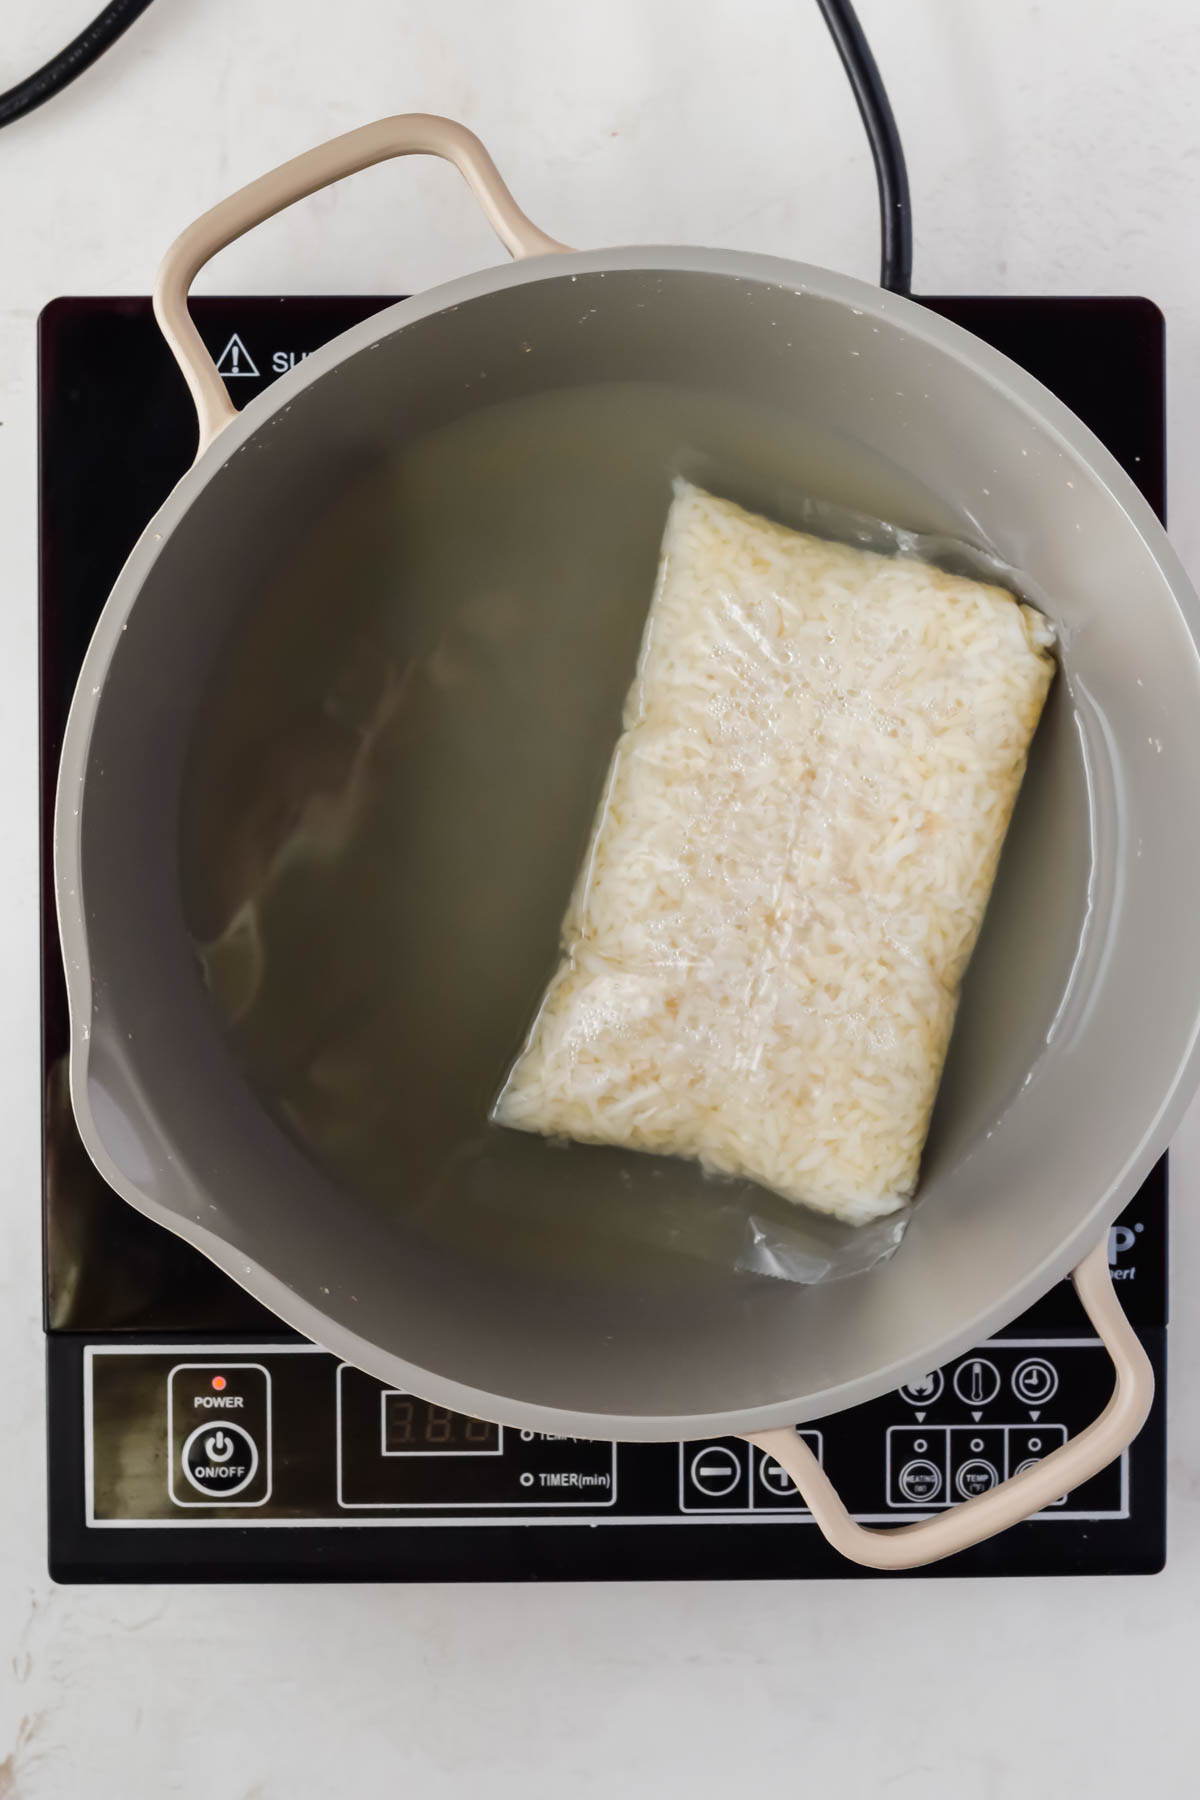 boil in bag rice in gray sauce pot.